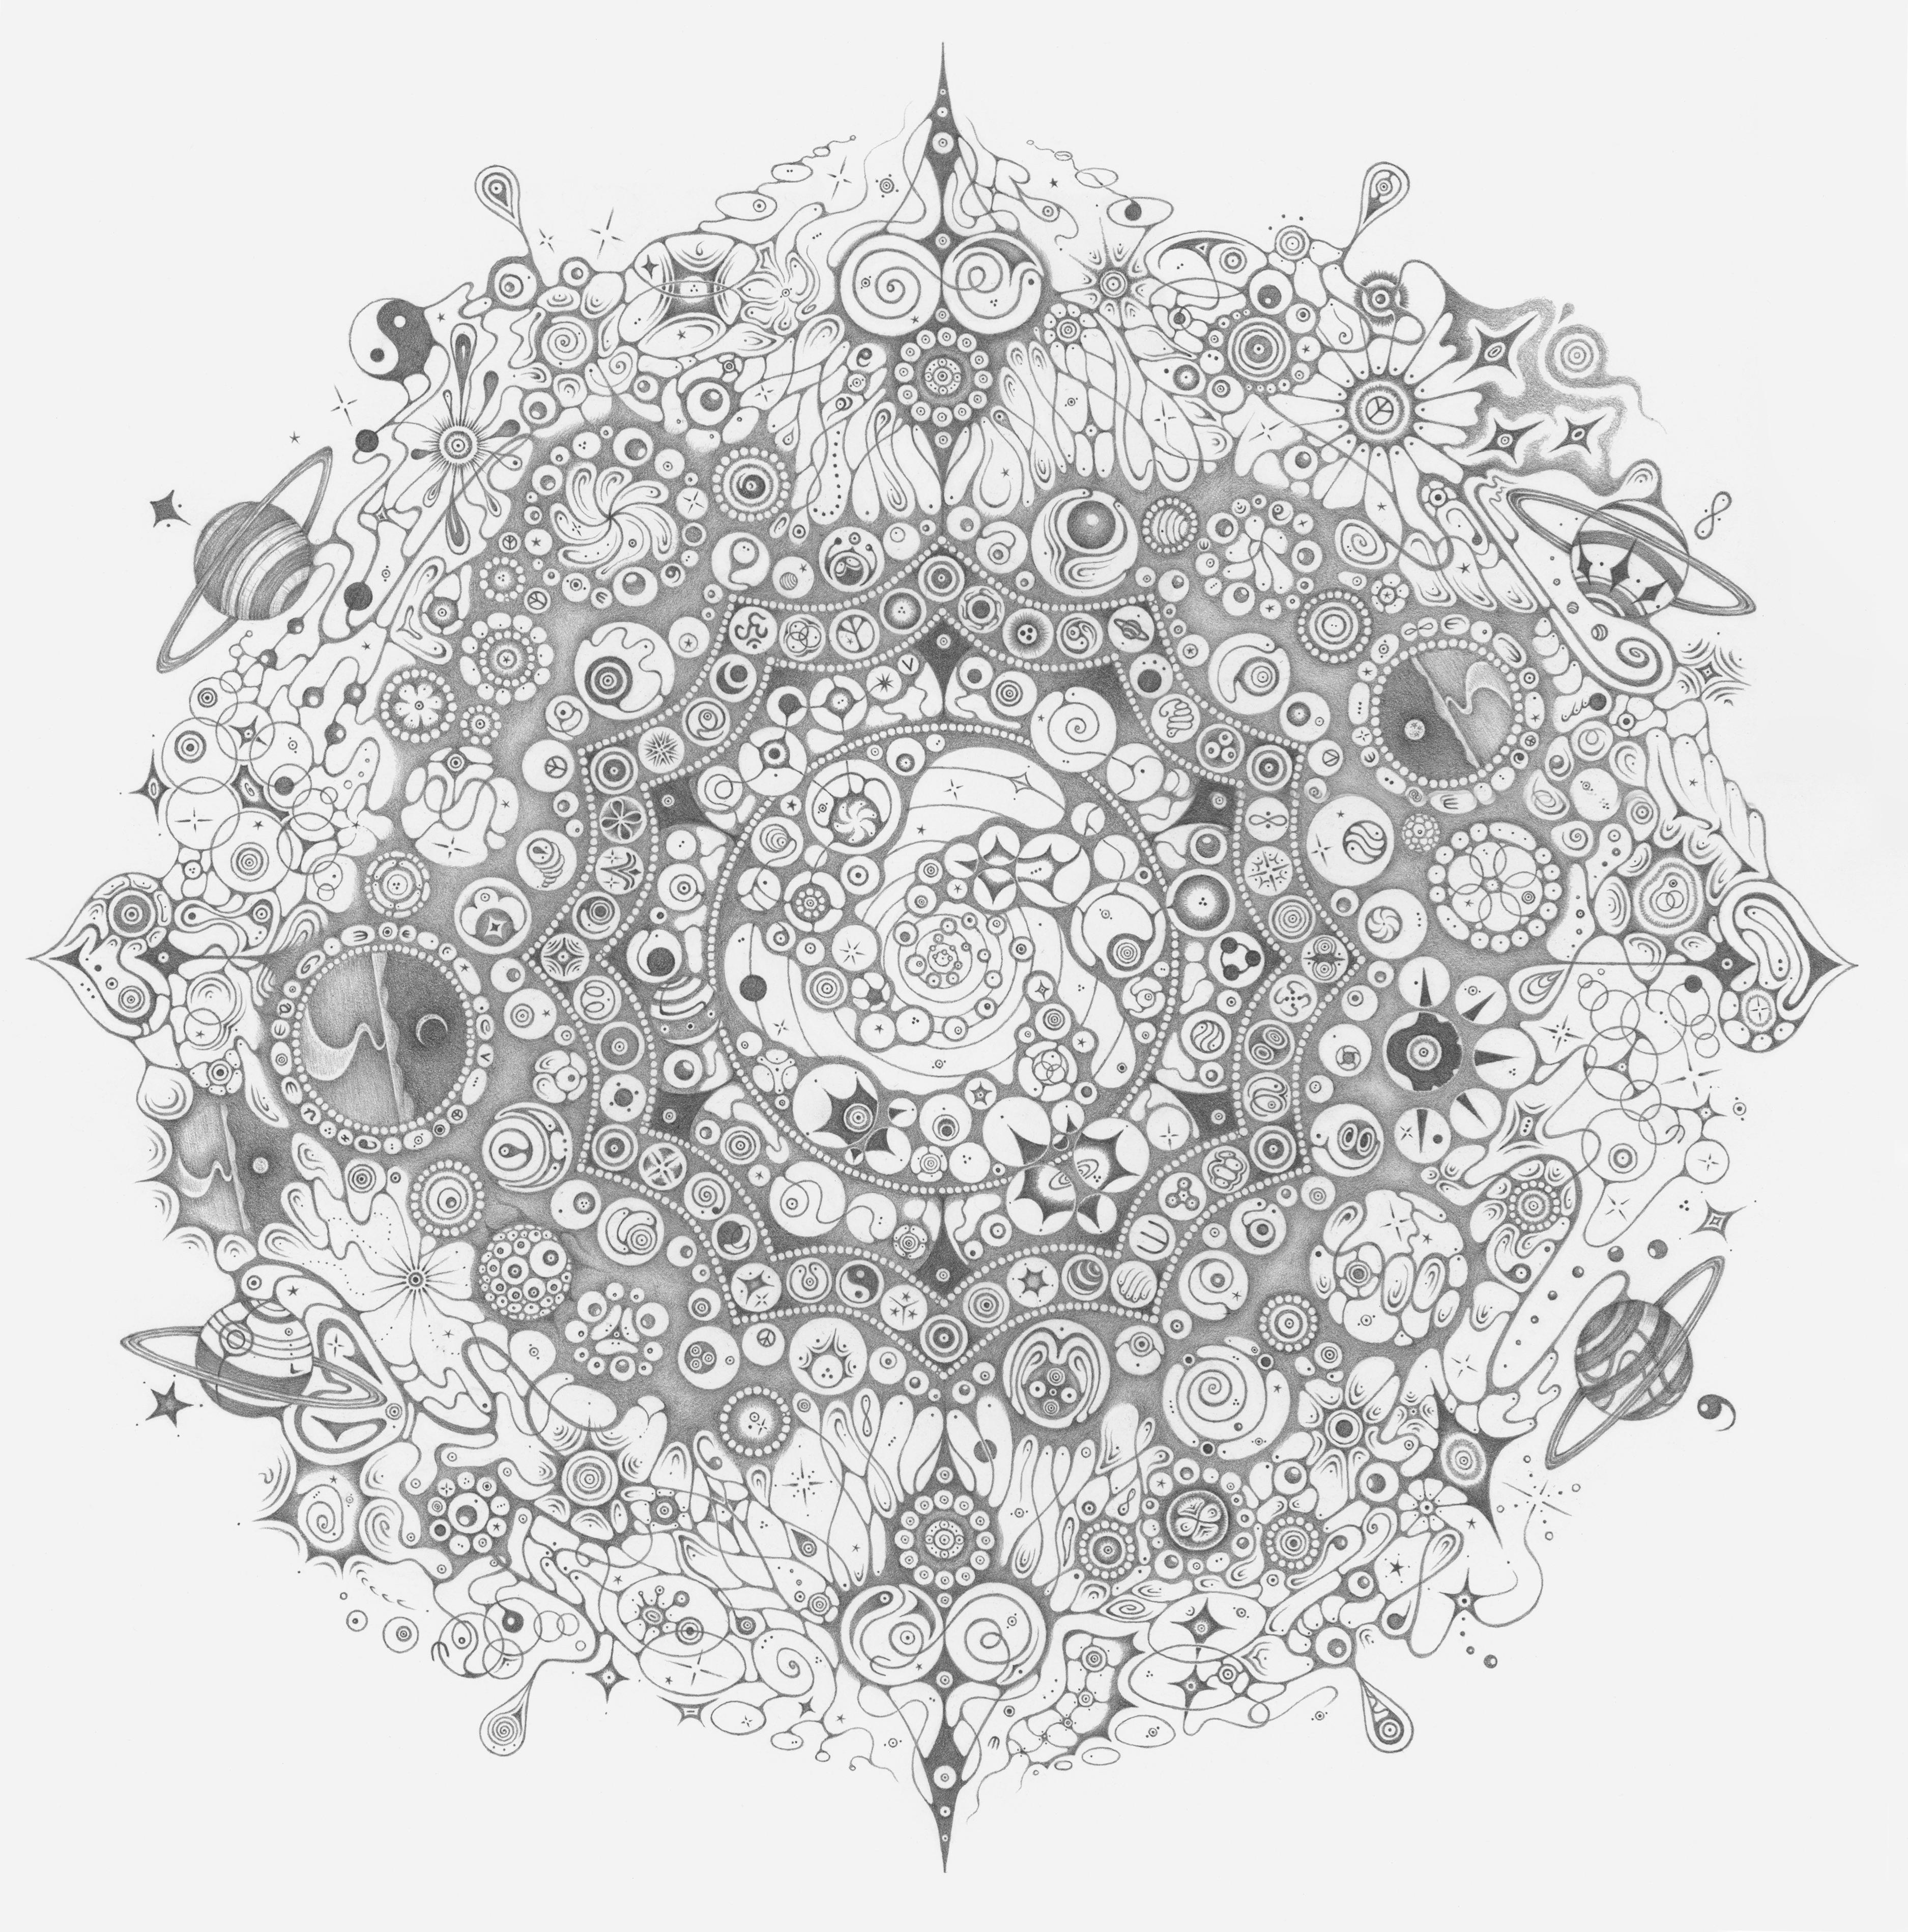 150 flocons de neige, Planets, thème spirituel, dessin au crayon Mandala de la nature